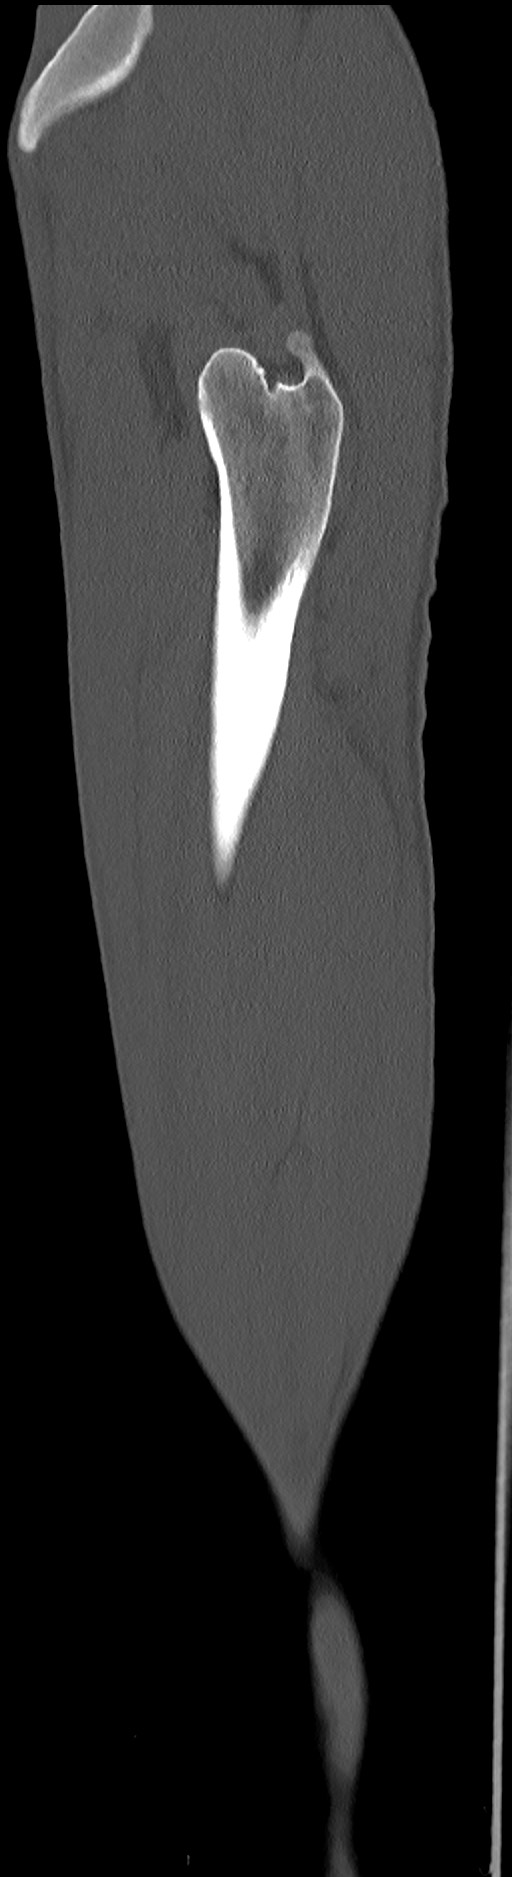 Chronic osteomyelitis (with sequestrum) (Radiopaedia 74813-85822 C 19).jpg